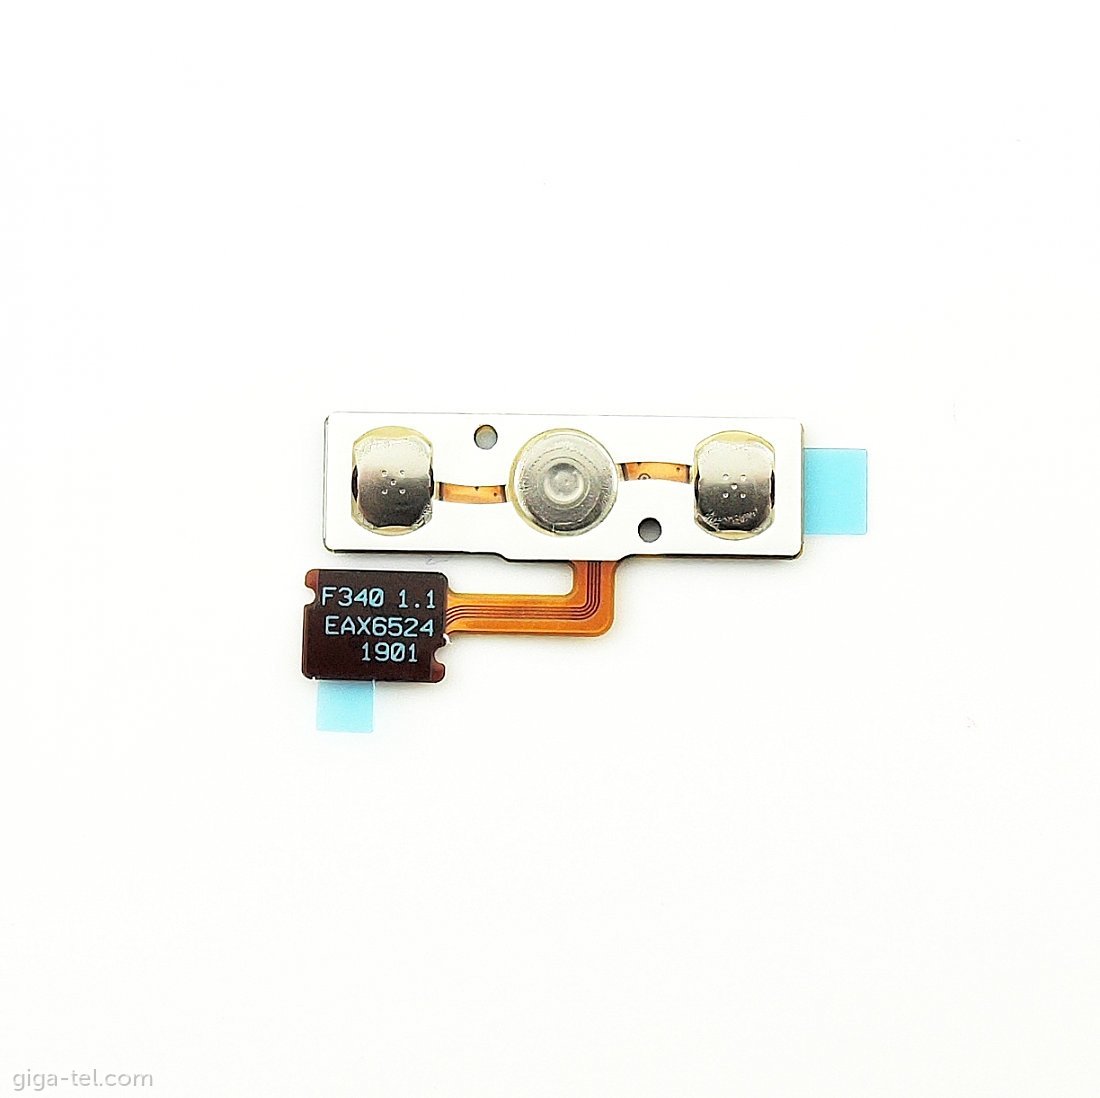 LG D955 ui keypad